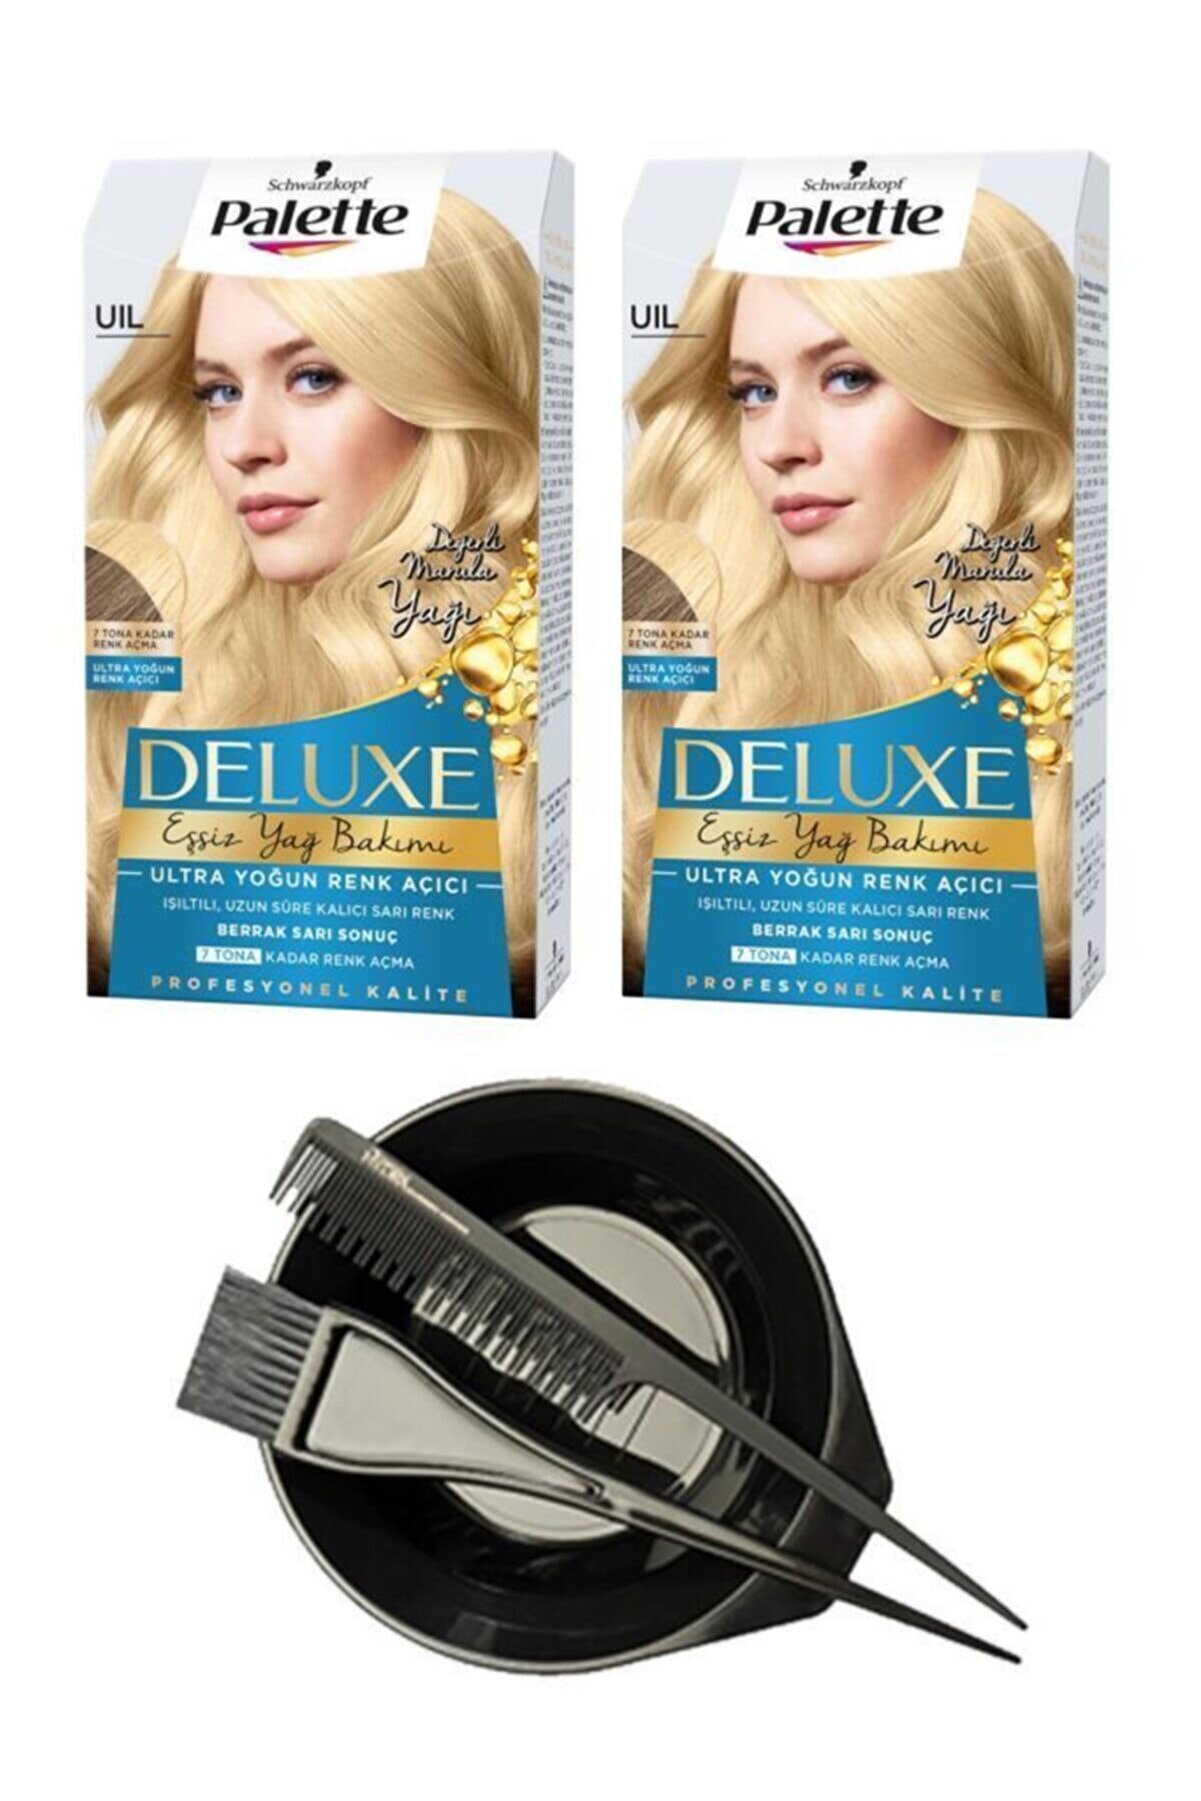 Palette Deluxe Uıl Ultra Yoğun Renk Açıcı X 2+ Saç Boyama Seti 38388243697543